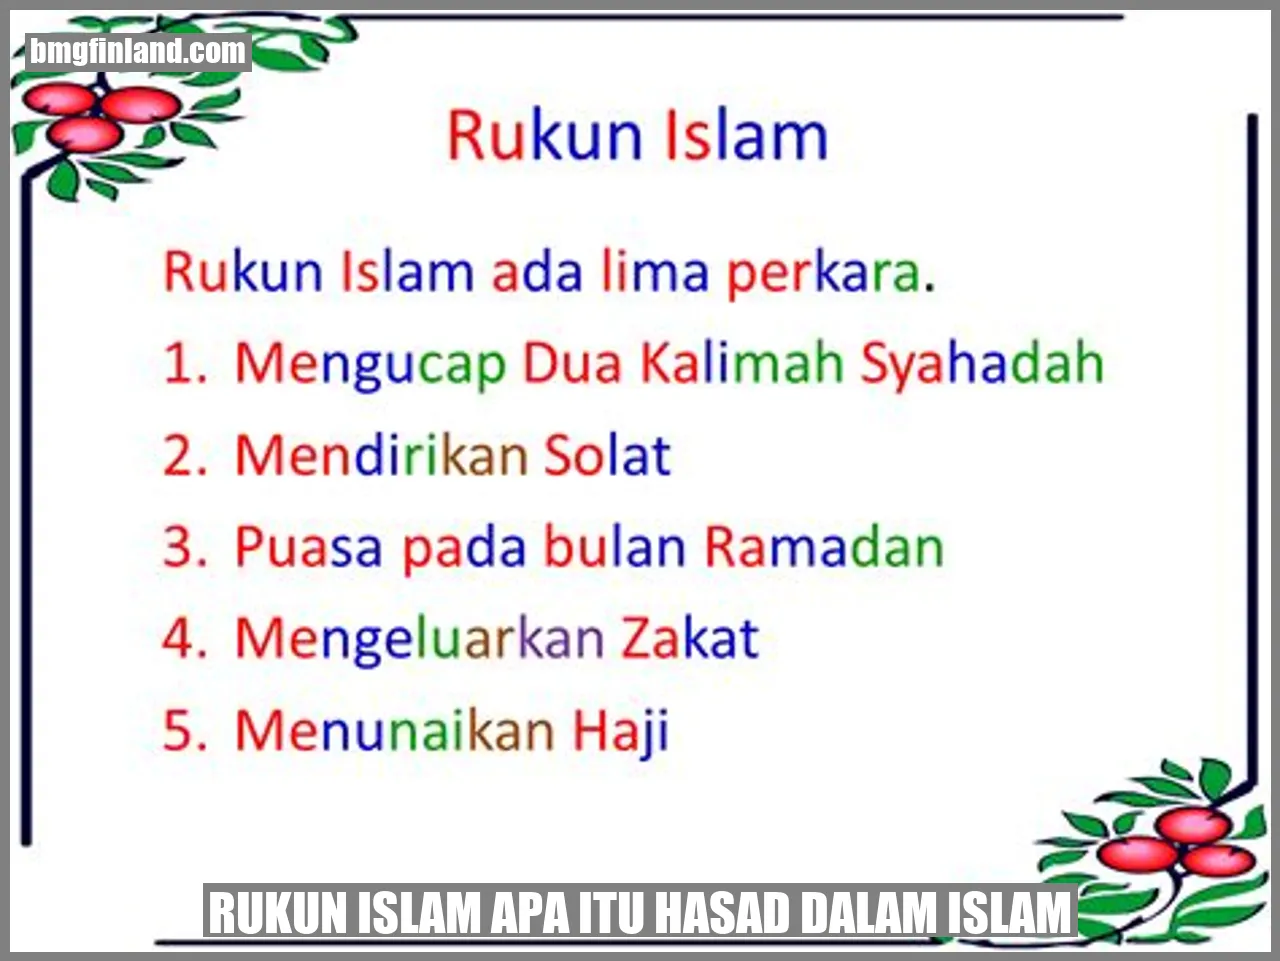 Hasad dalam Islam